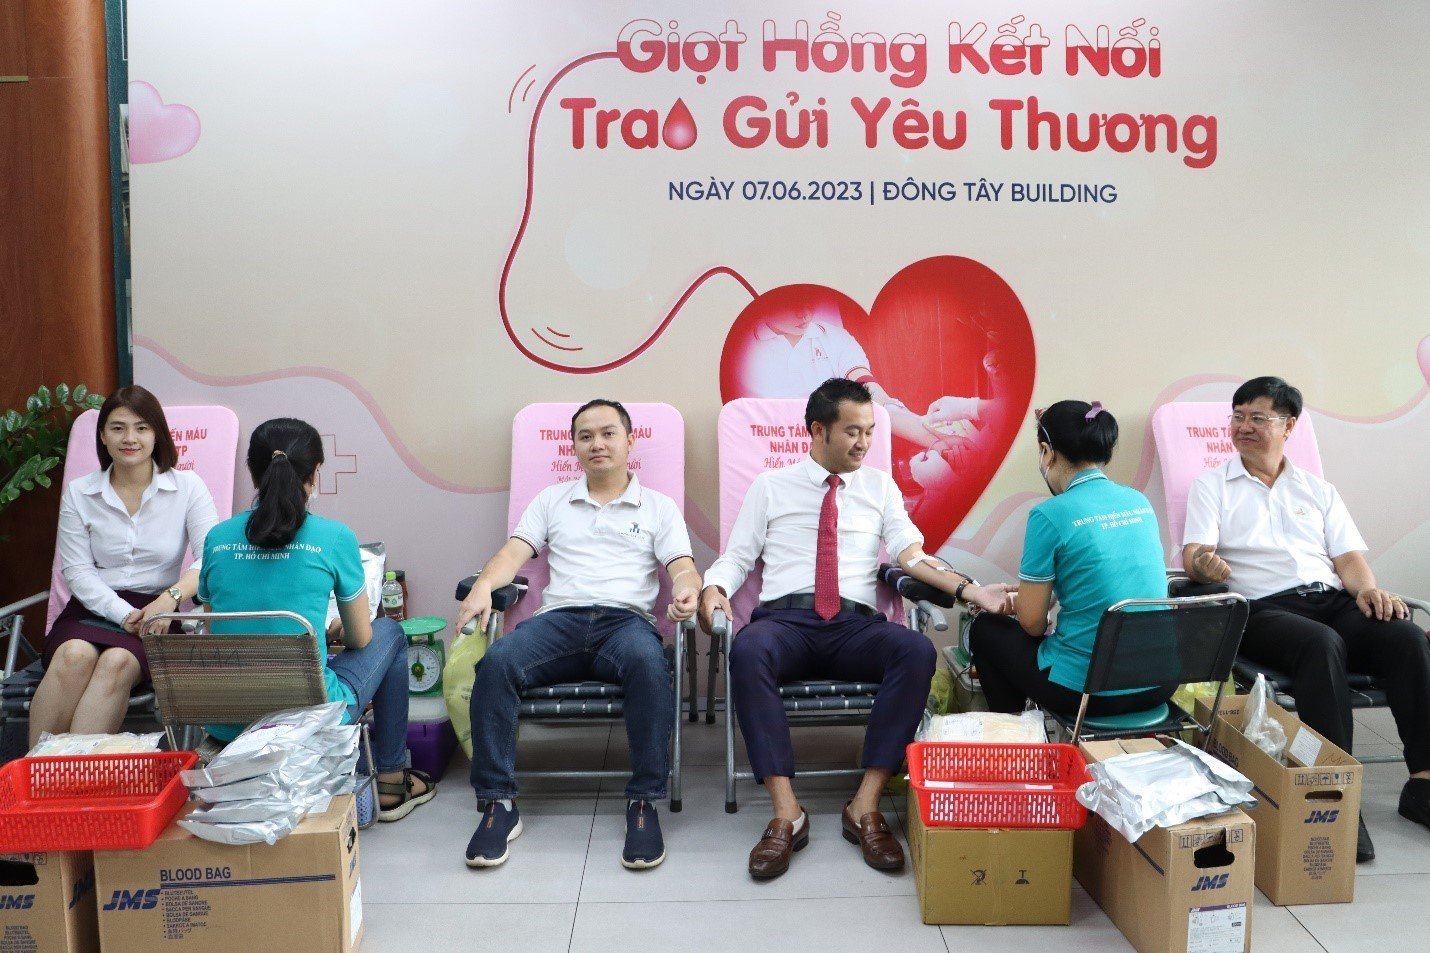 Ban Giám đốc công ty cùng tham gia hiến máu tình nguyện